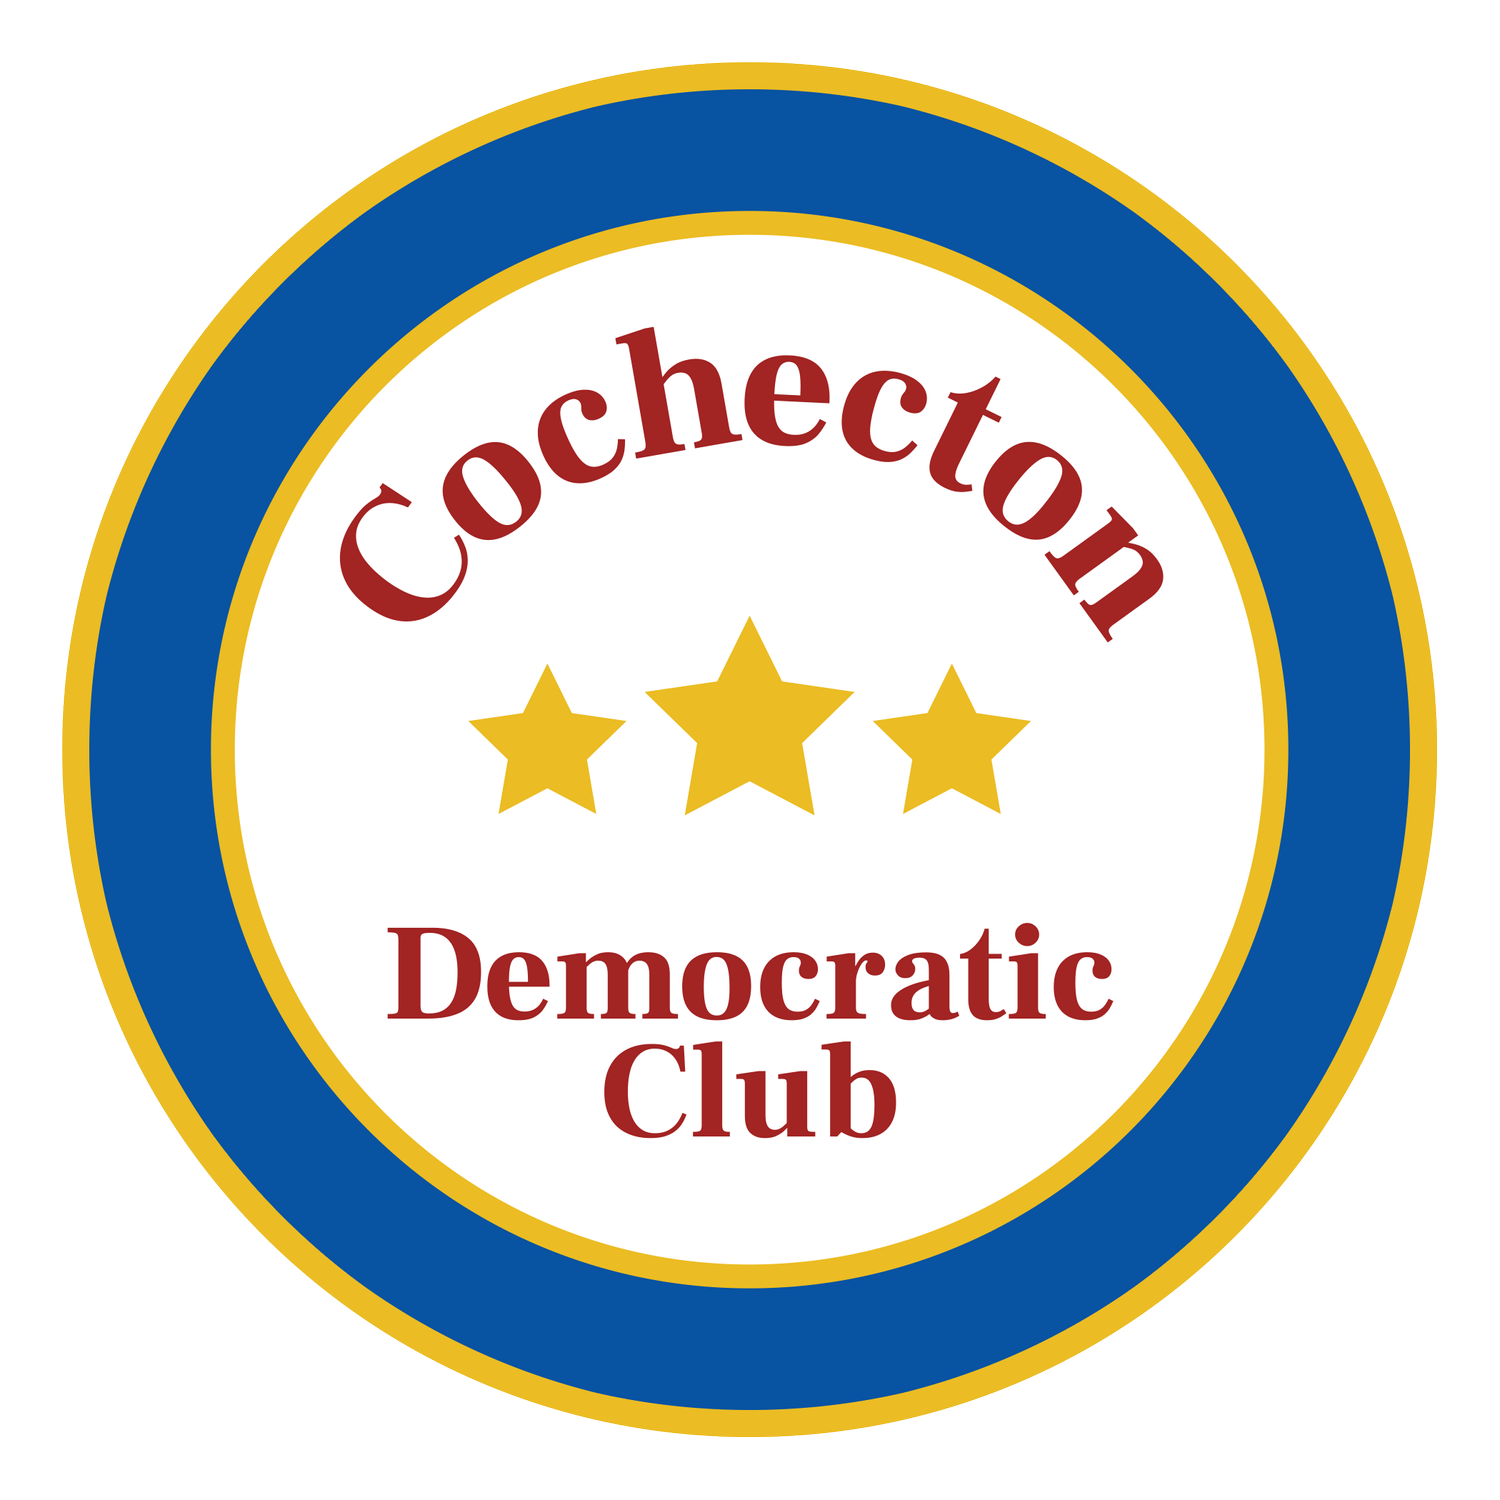 COCHECTON DEMOCRATIC CLUB